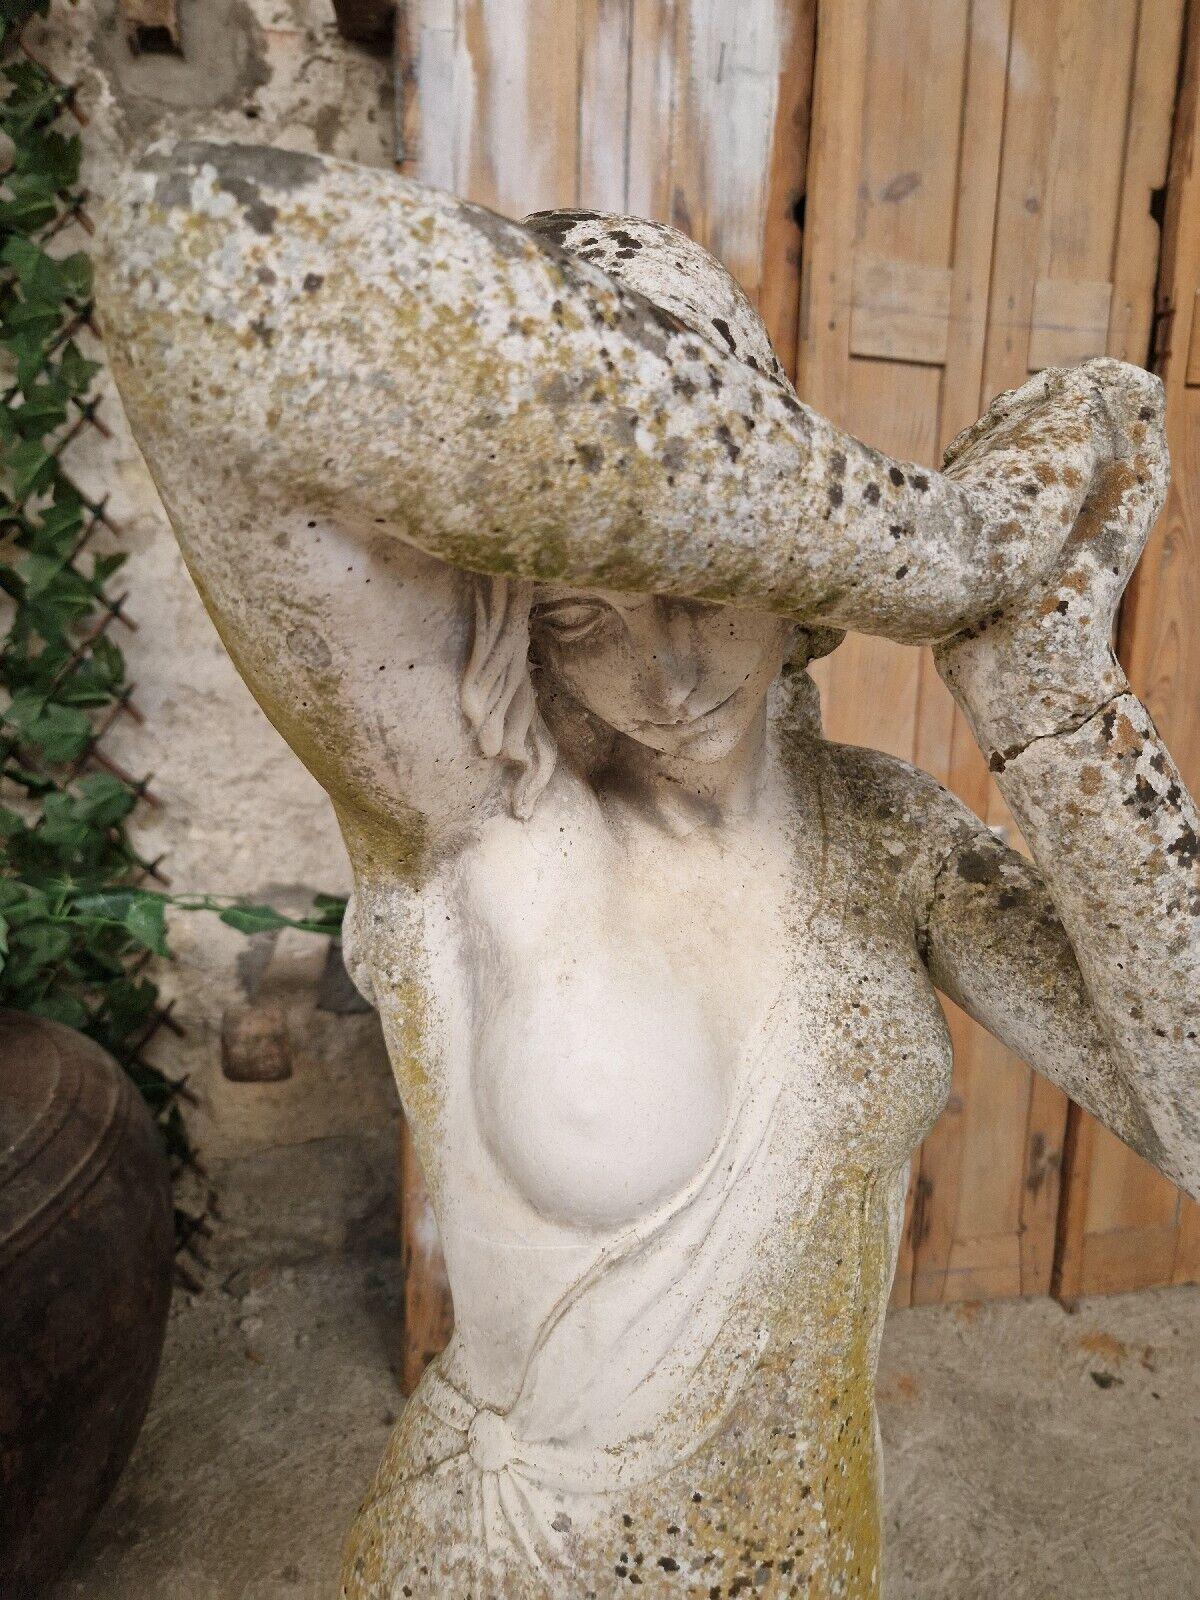 Antike weibliche Statue, die aus einem Schloss in Südfrankreich stammt.

Große dekorative Stück mit schönen Patina.

2 Reparaturen an einem Arm im verwitterten Steinverbund.

Abmessungen
125cm hoch

Dies ist ein schwerer Gegenstand.

Auflistung